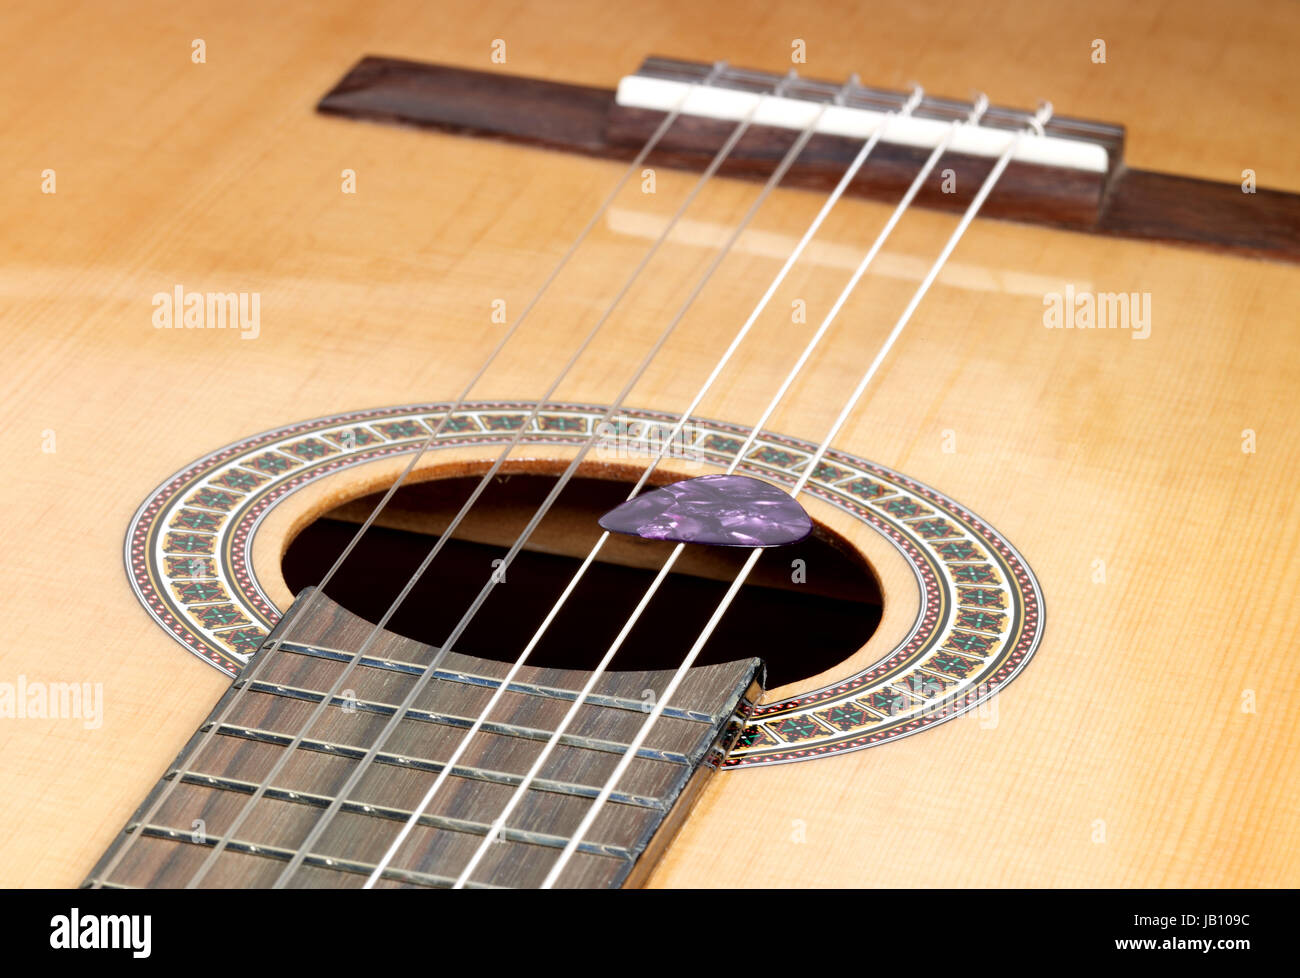 Dettaglio di una chitarra classica Foto Stock